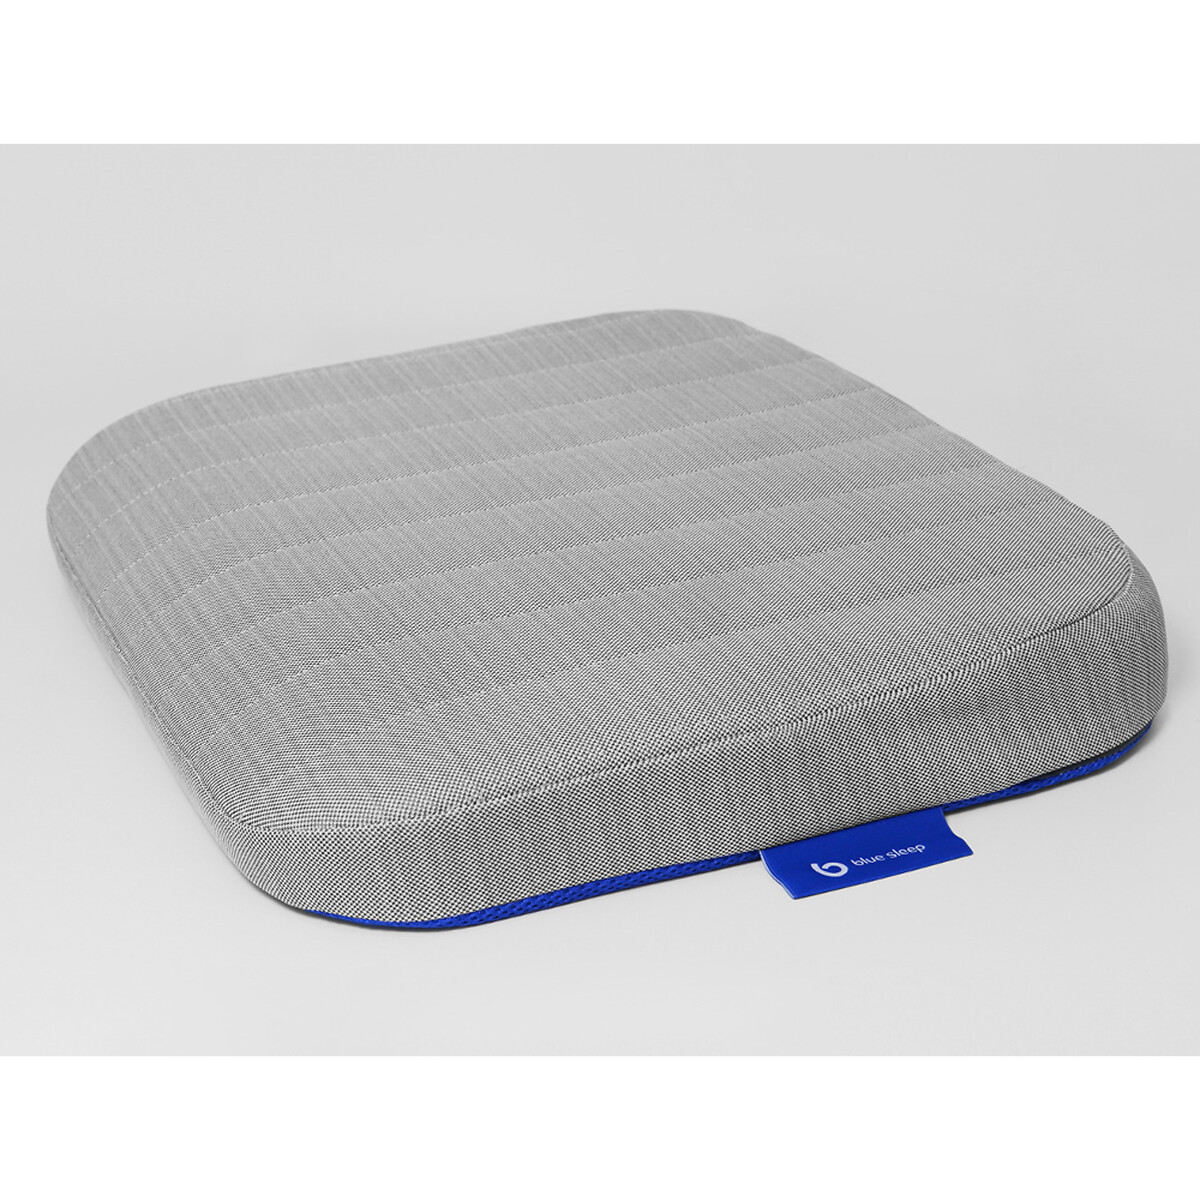 Подушка-кушон Blue Sleep для сидения единый размер белый